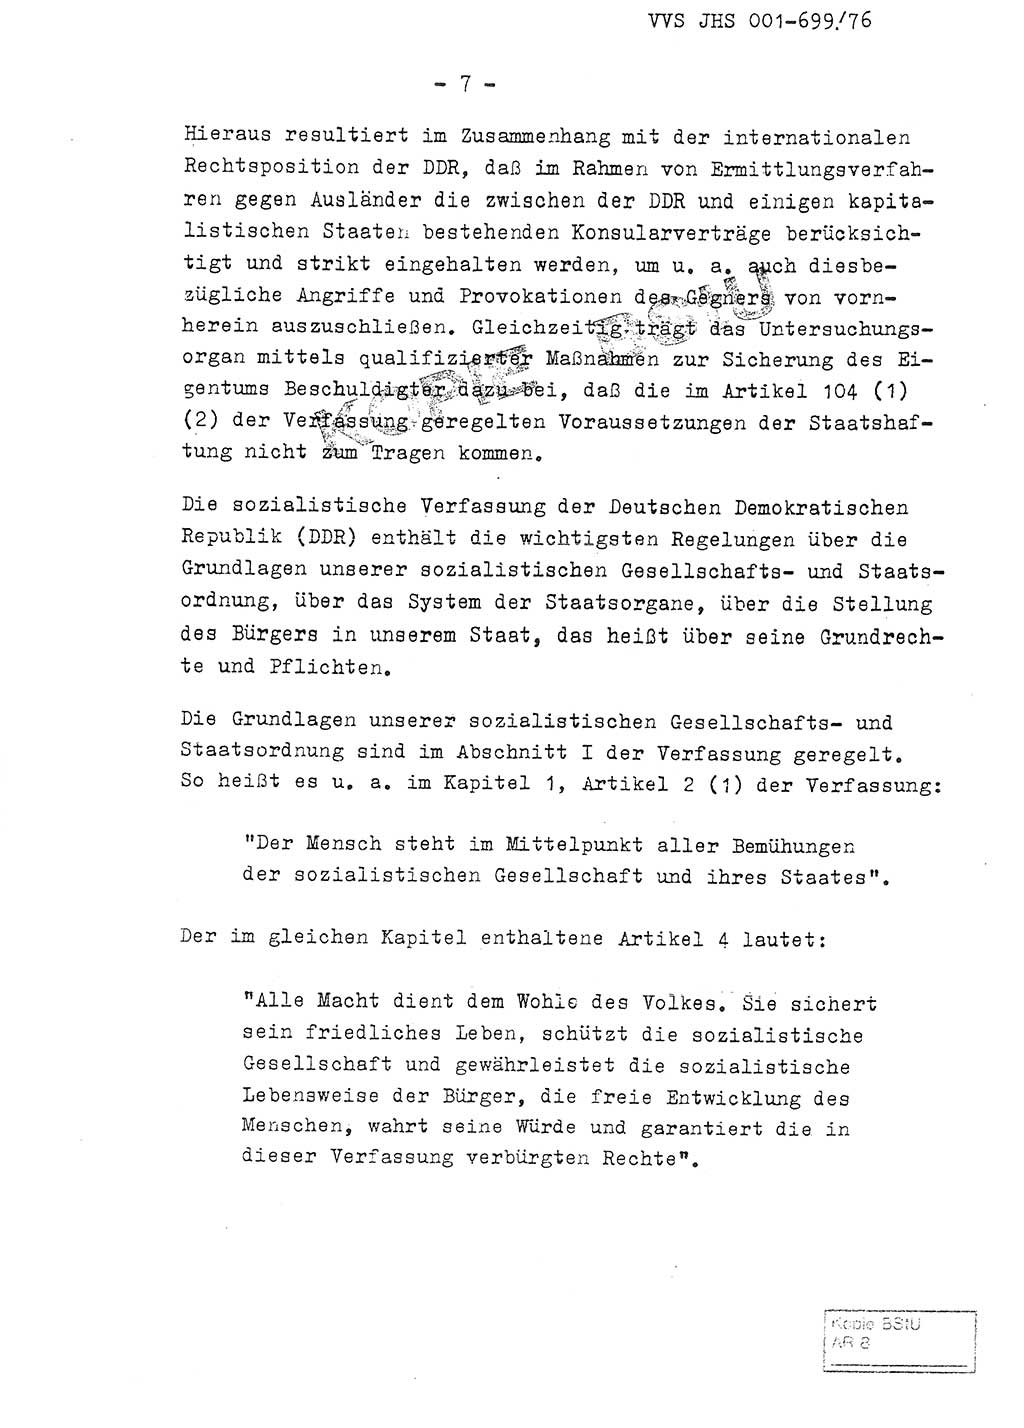 Fachschulabschlußarbeit Leutnant Volkmar Taubert (HA Ⅸ/9), Leutnant Axel Naumann (HA Ⅸ/9), Unterleutnat Detlef Debski (HA Ⅸ/9), Ministerium für Staatssicherheit (MfS) [Deutsche Demokratische Republik (DDR)], Juristische Hochschule (JHS), Vertrauliche Verschlußsache (VVS) 001-699/76, Potsdam 1976, Seite 7 (FS-Abschl.-Arb. MfS DDR JHS VVS 001-699/76 1976, S. 7)